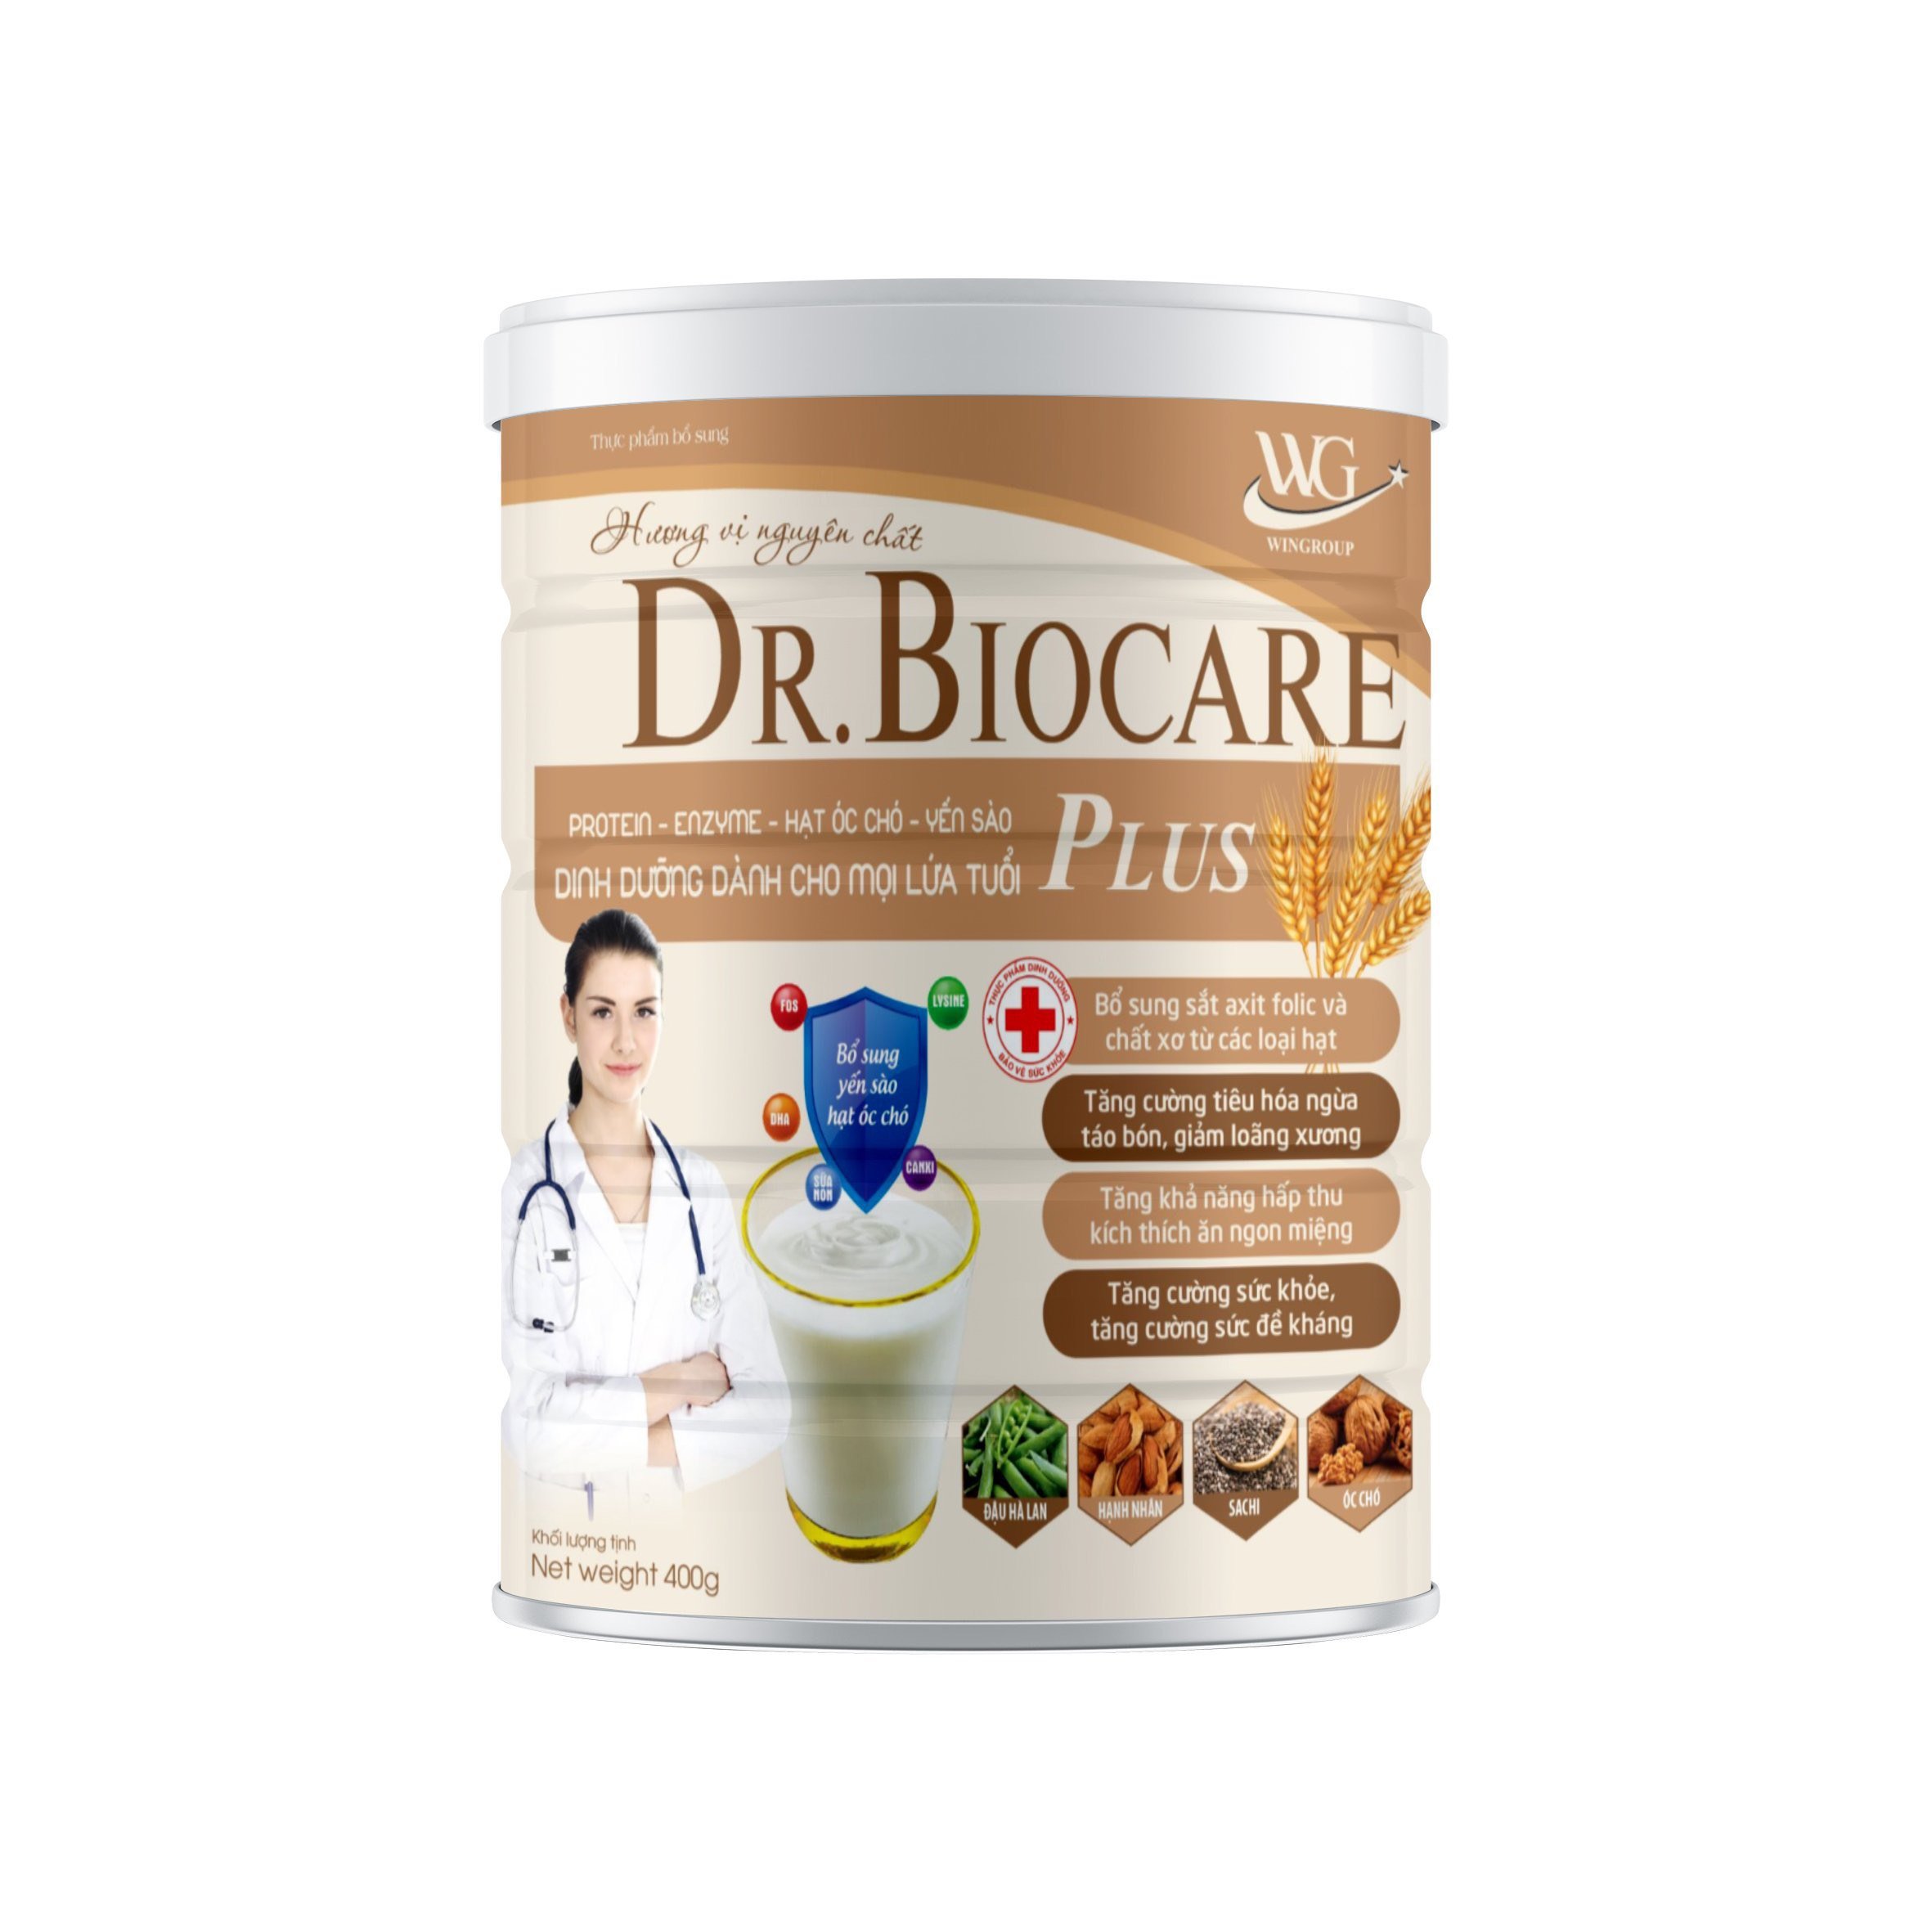 Sữa hạt dinh dưỡng Dr.Biocare Bổ sung sắt axit folic và chất xơ từ các